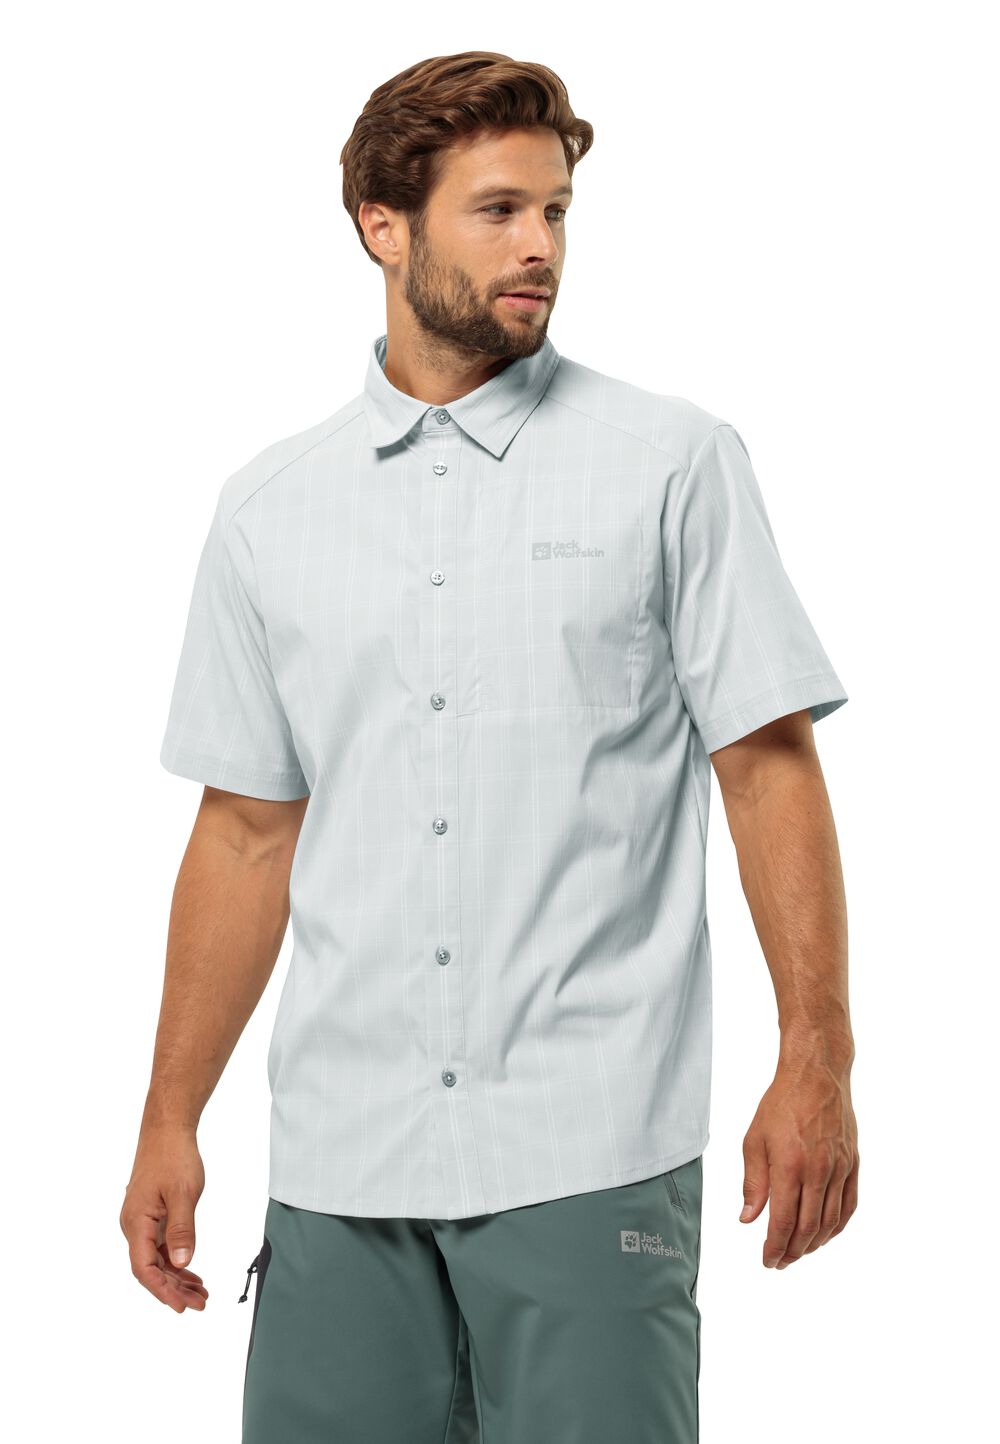 Jack Wolfskin Norbo S S Shirt Men Overhemd met korte mouwen Heren M grijs cool grey check